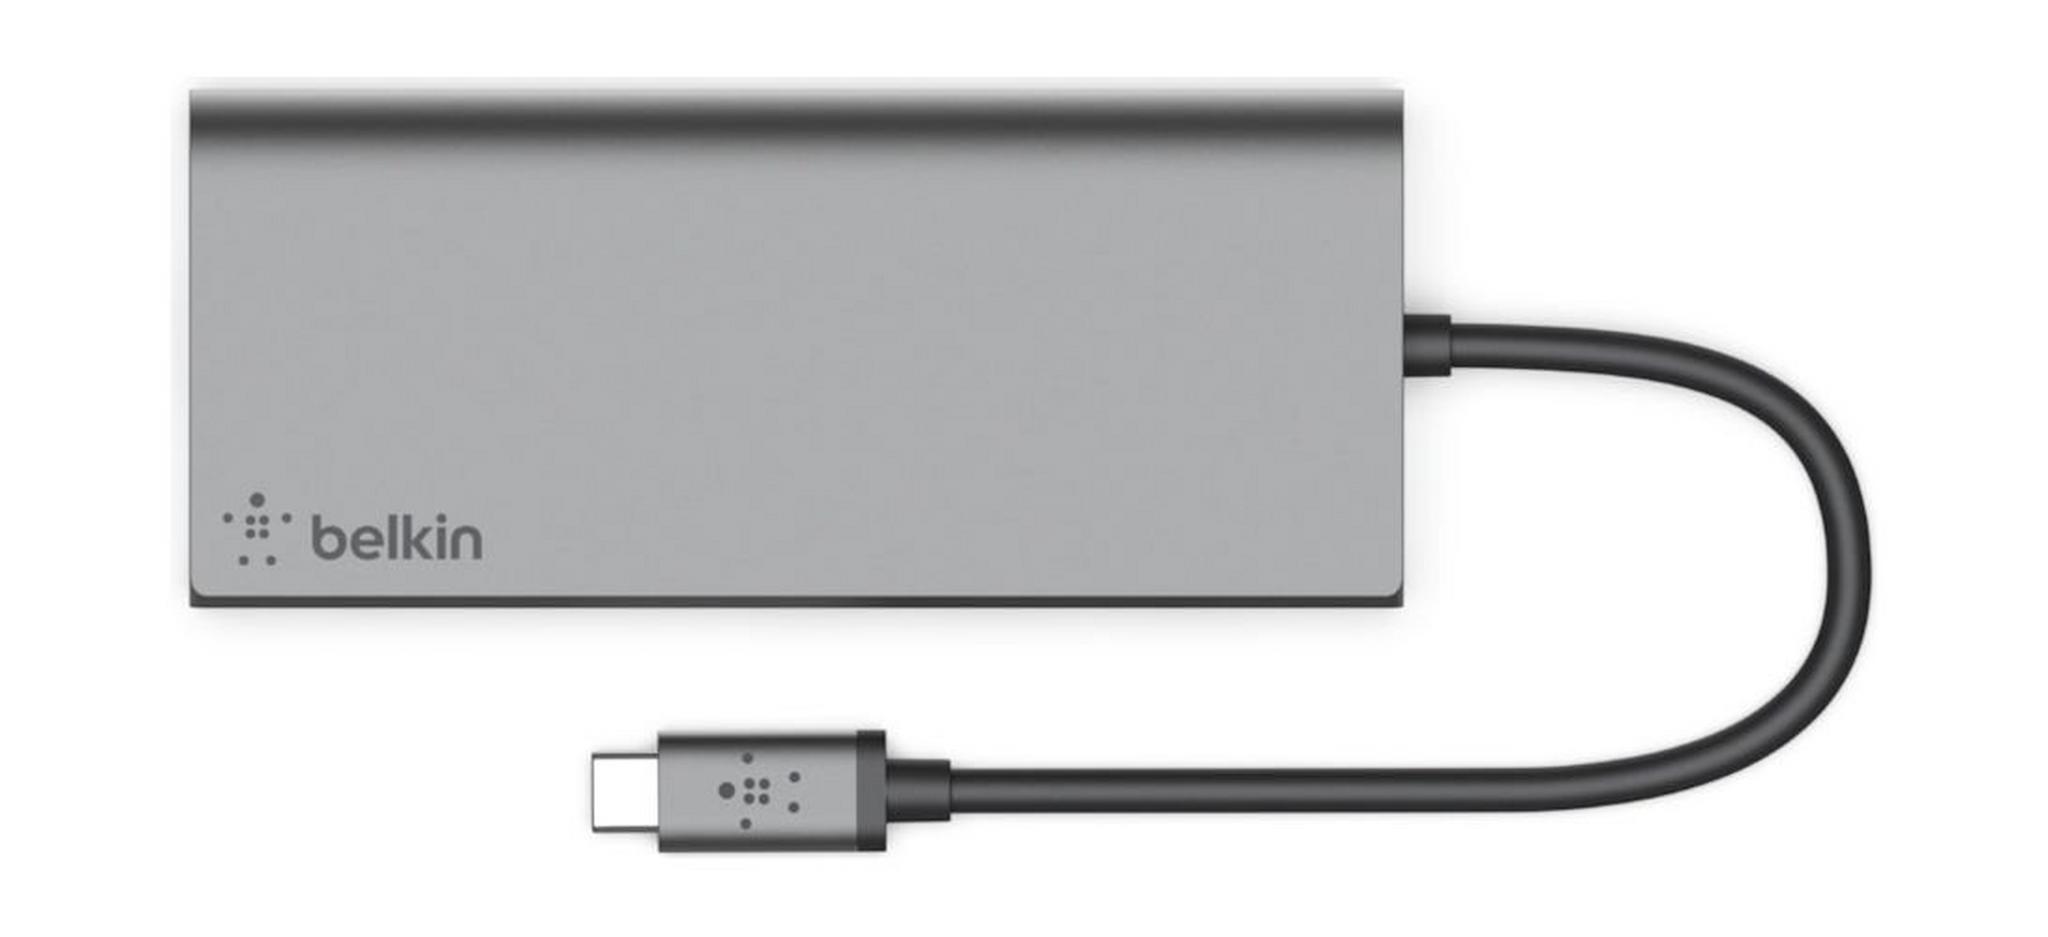 Belkin USB-C 5-in-1 Multimedia Hub